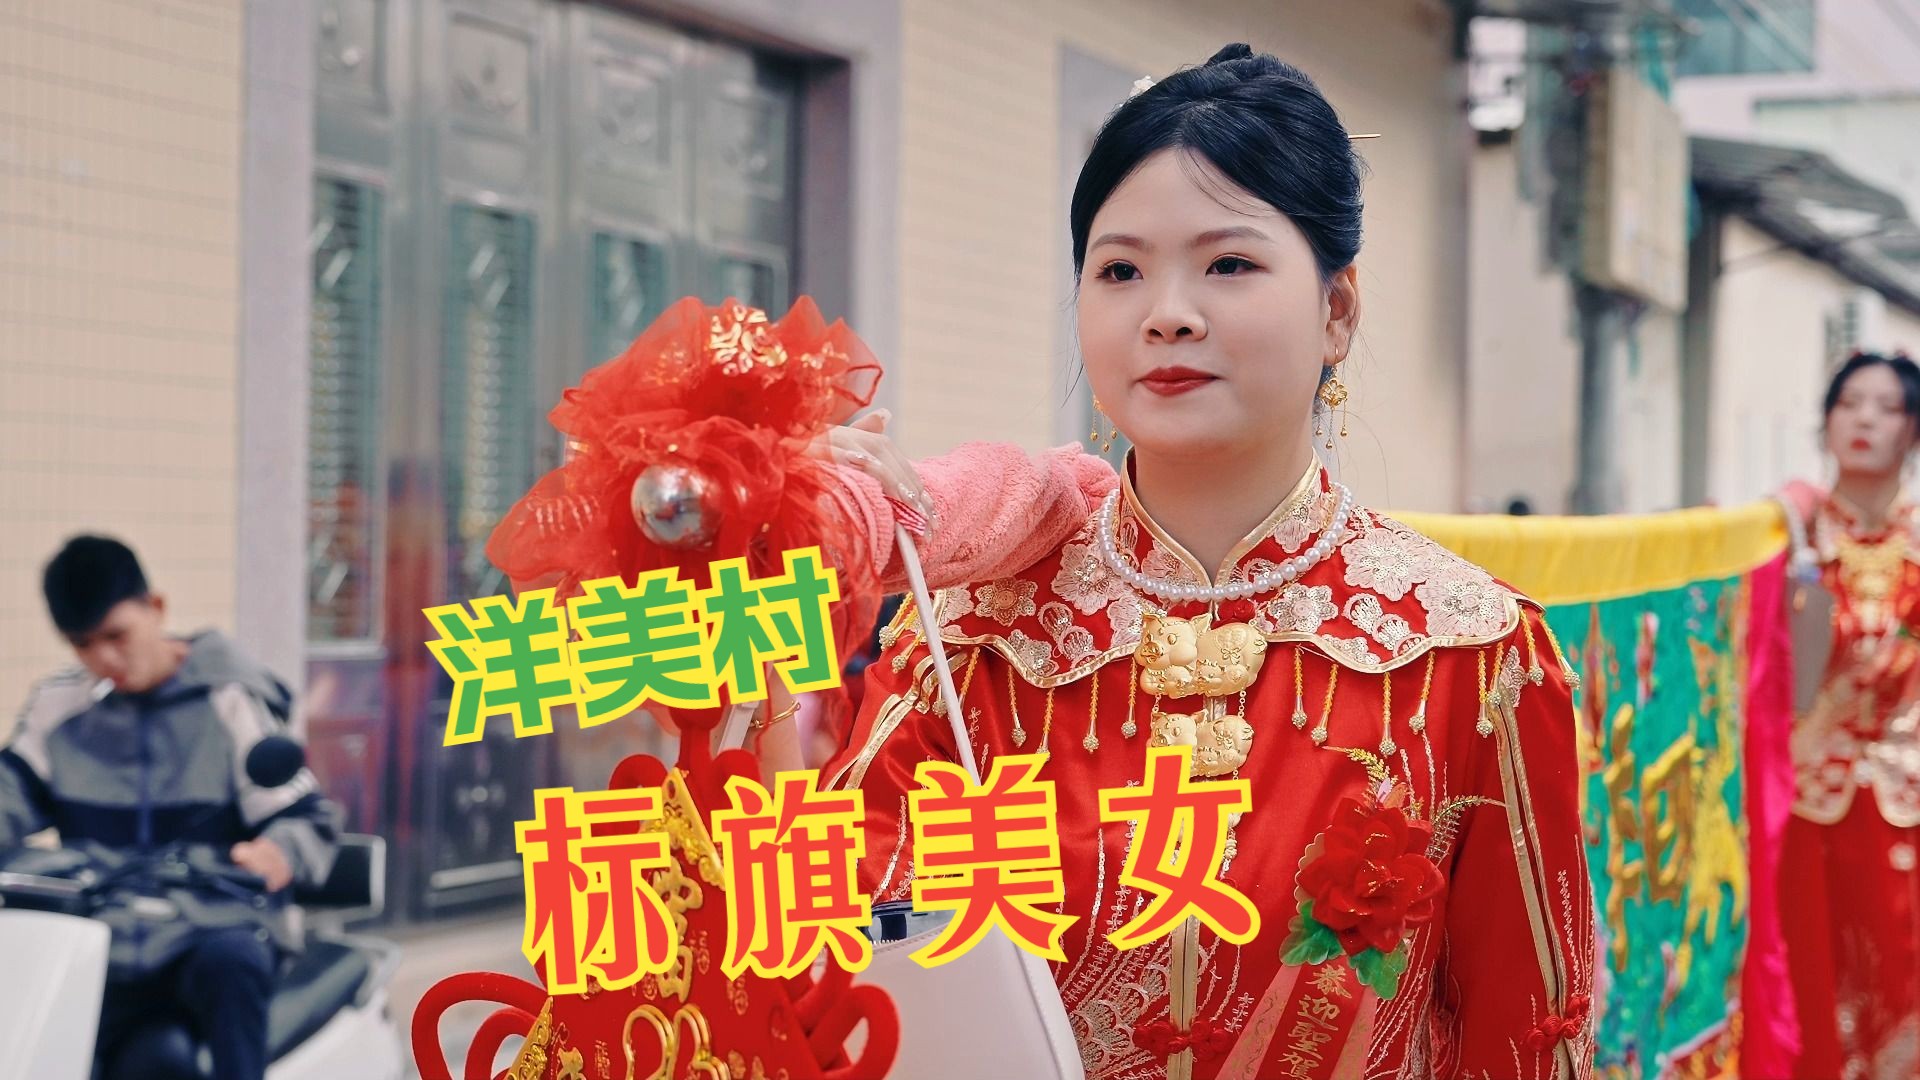 潮汕美女扛标旗感受传统文化的浪漫!